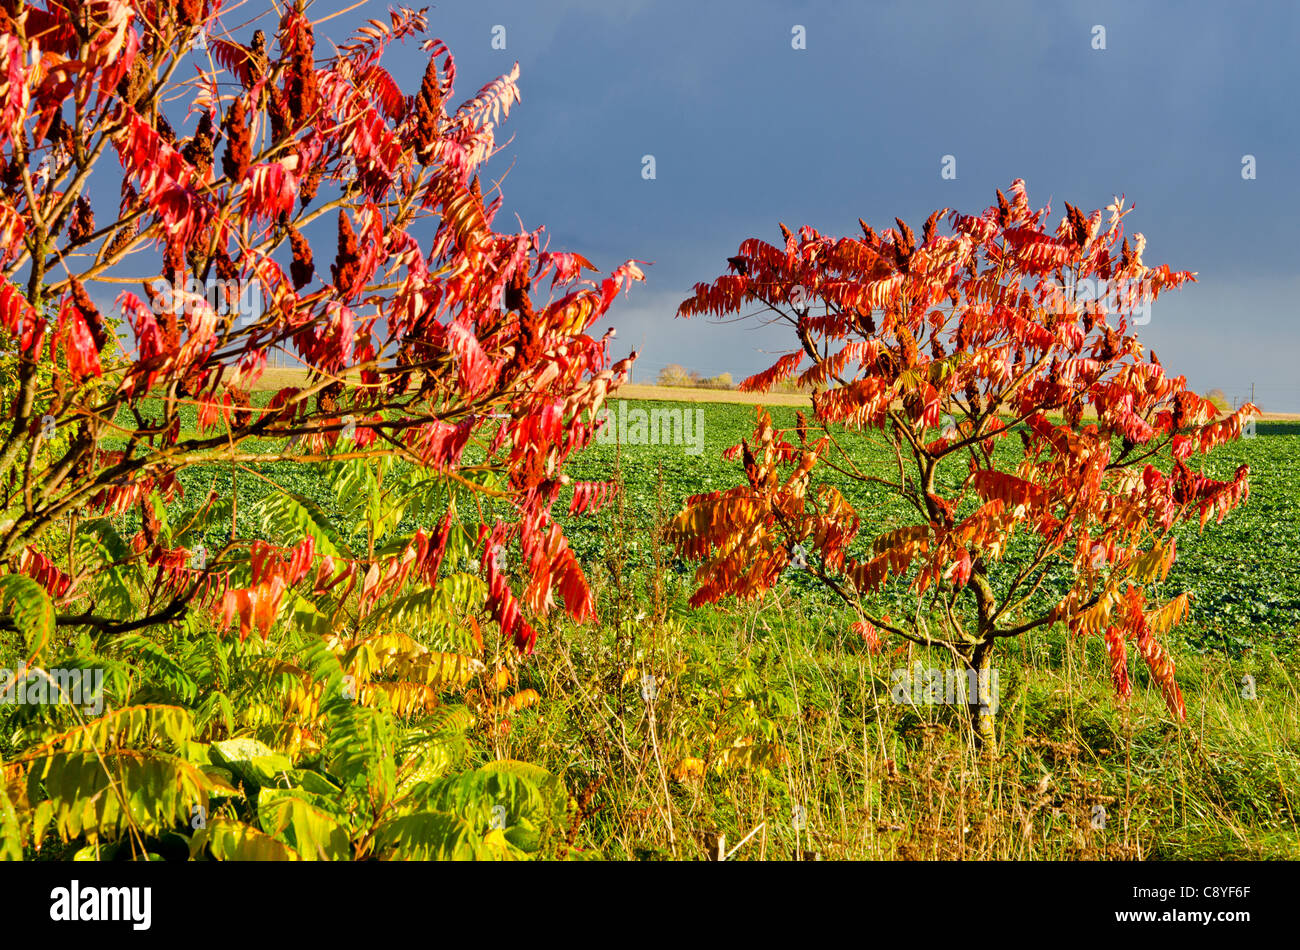 Paar kleine Bäume mit roten farbigen Herbstlaub in der Nähe von landwirtschaftlich genutzten Feldern wachsen. Stockfoto